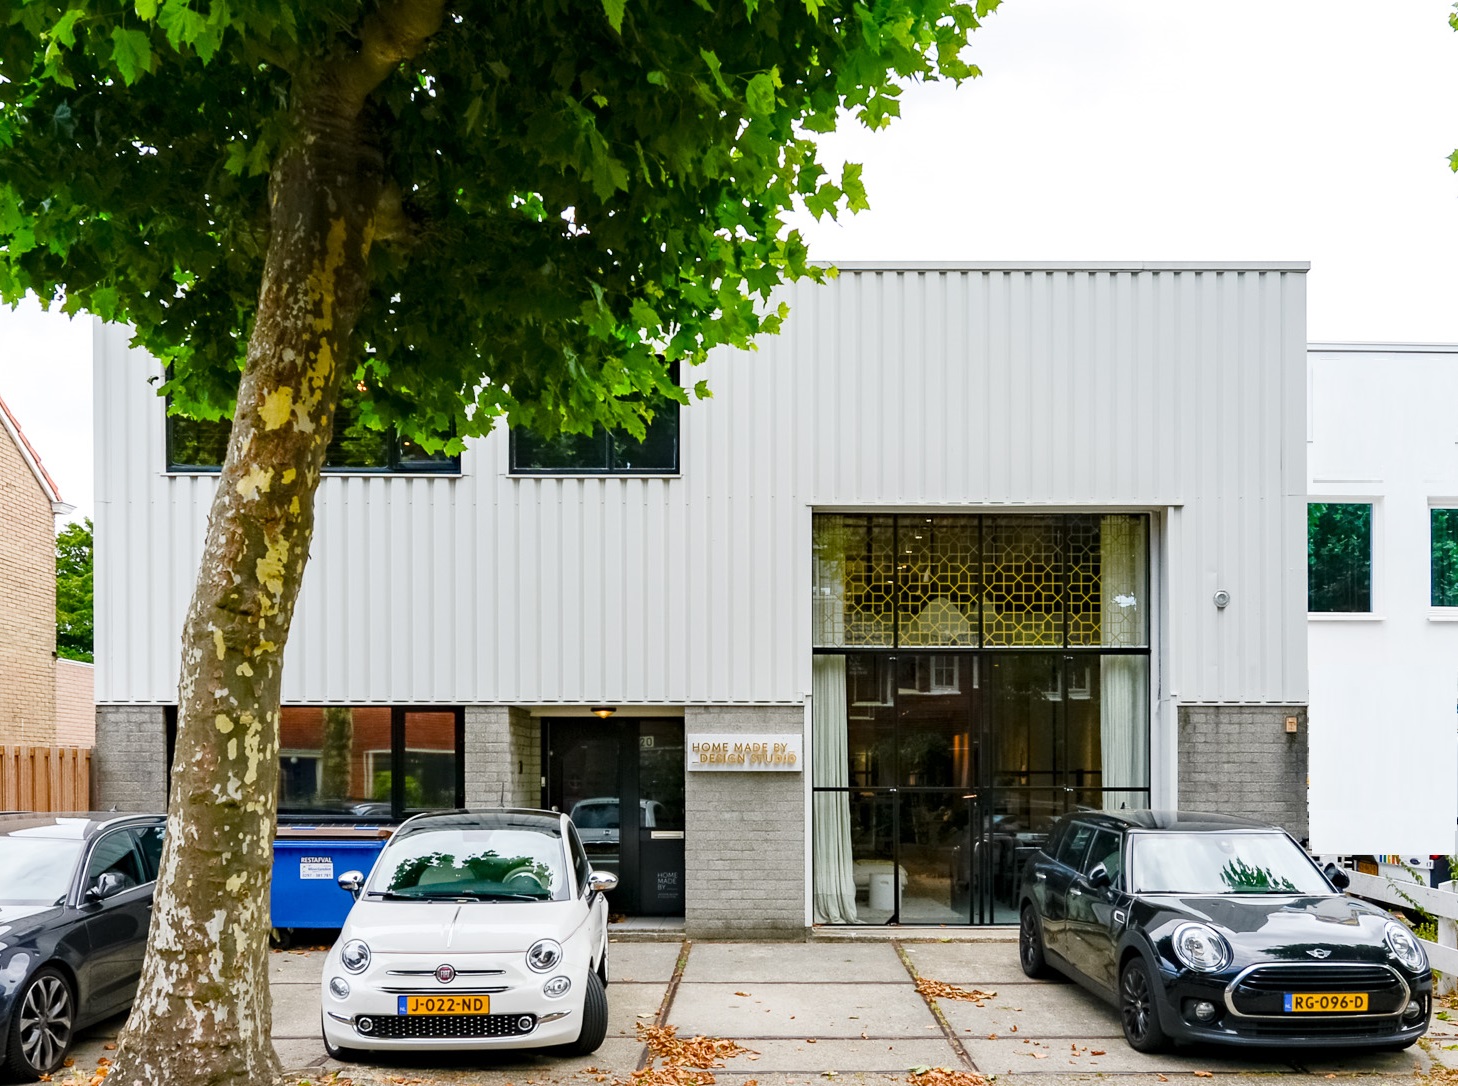 Te huur circa 720 m² multifunctionele bedrijfsruimte en/of showroom met kantoorruimte @Badhoevedorp Jan van Gentstraat 20